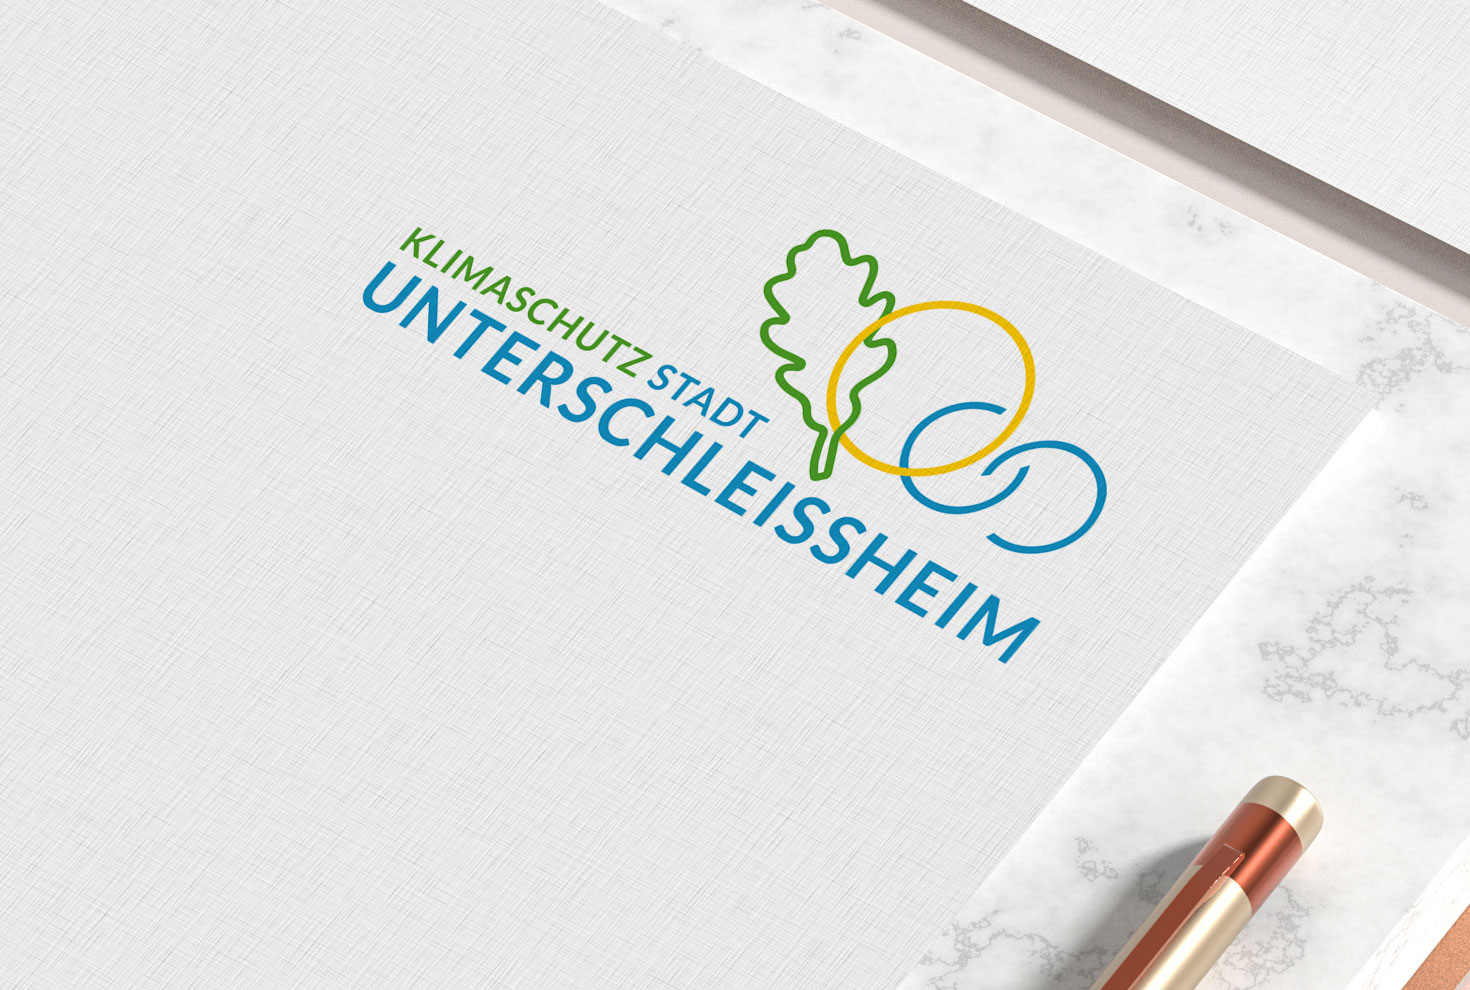 Logo Klimaschutz Unterschleissheim brief